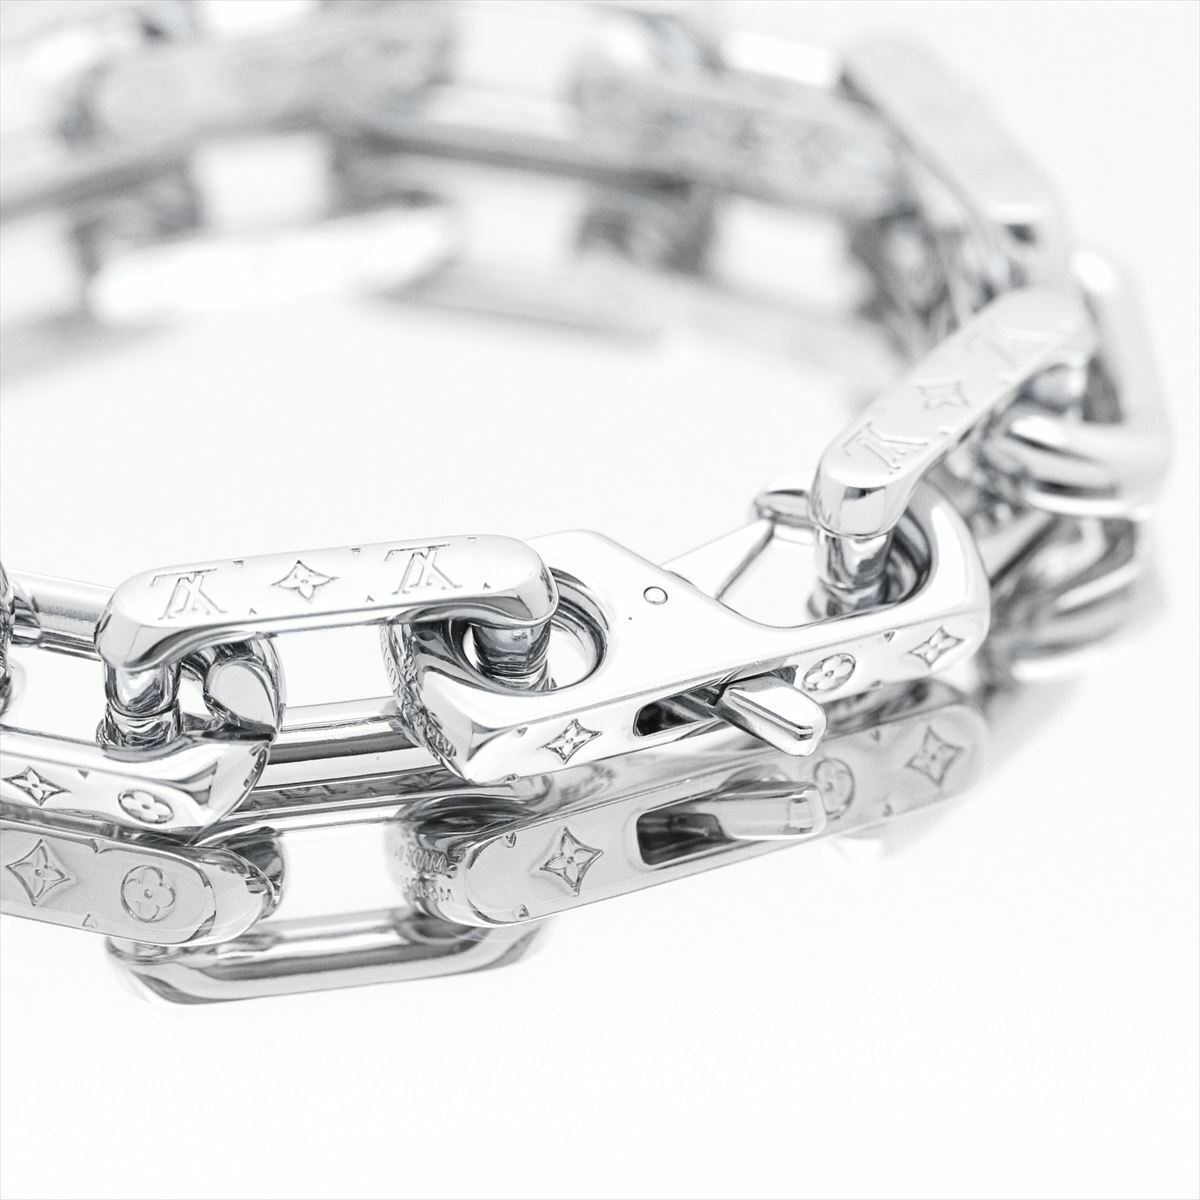 Louis Vuitton Monogram Palladium Finish Chain Link Bracelet Louis Vuitton